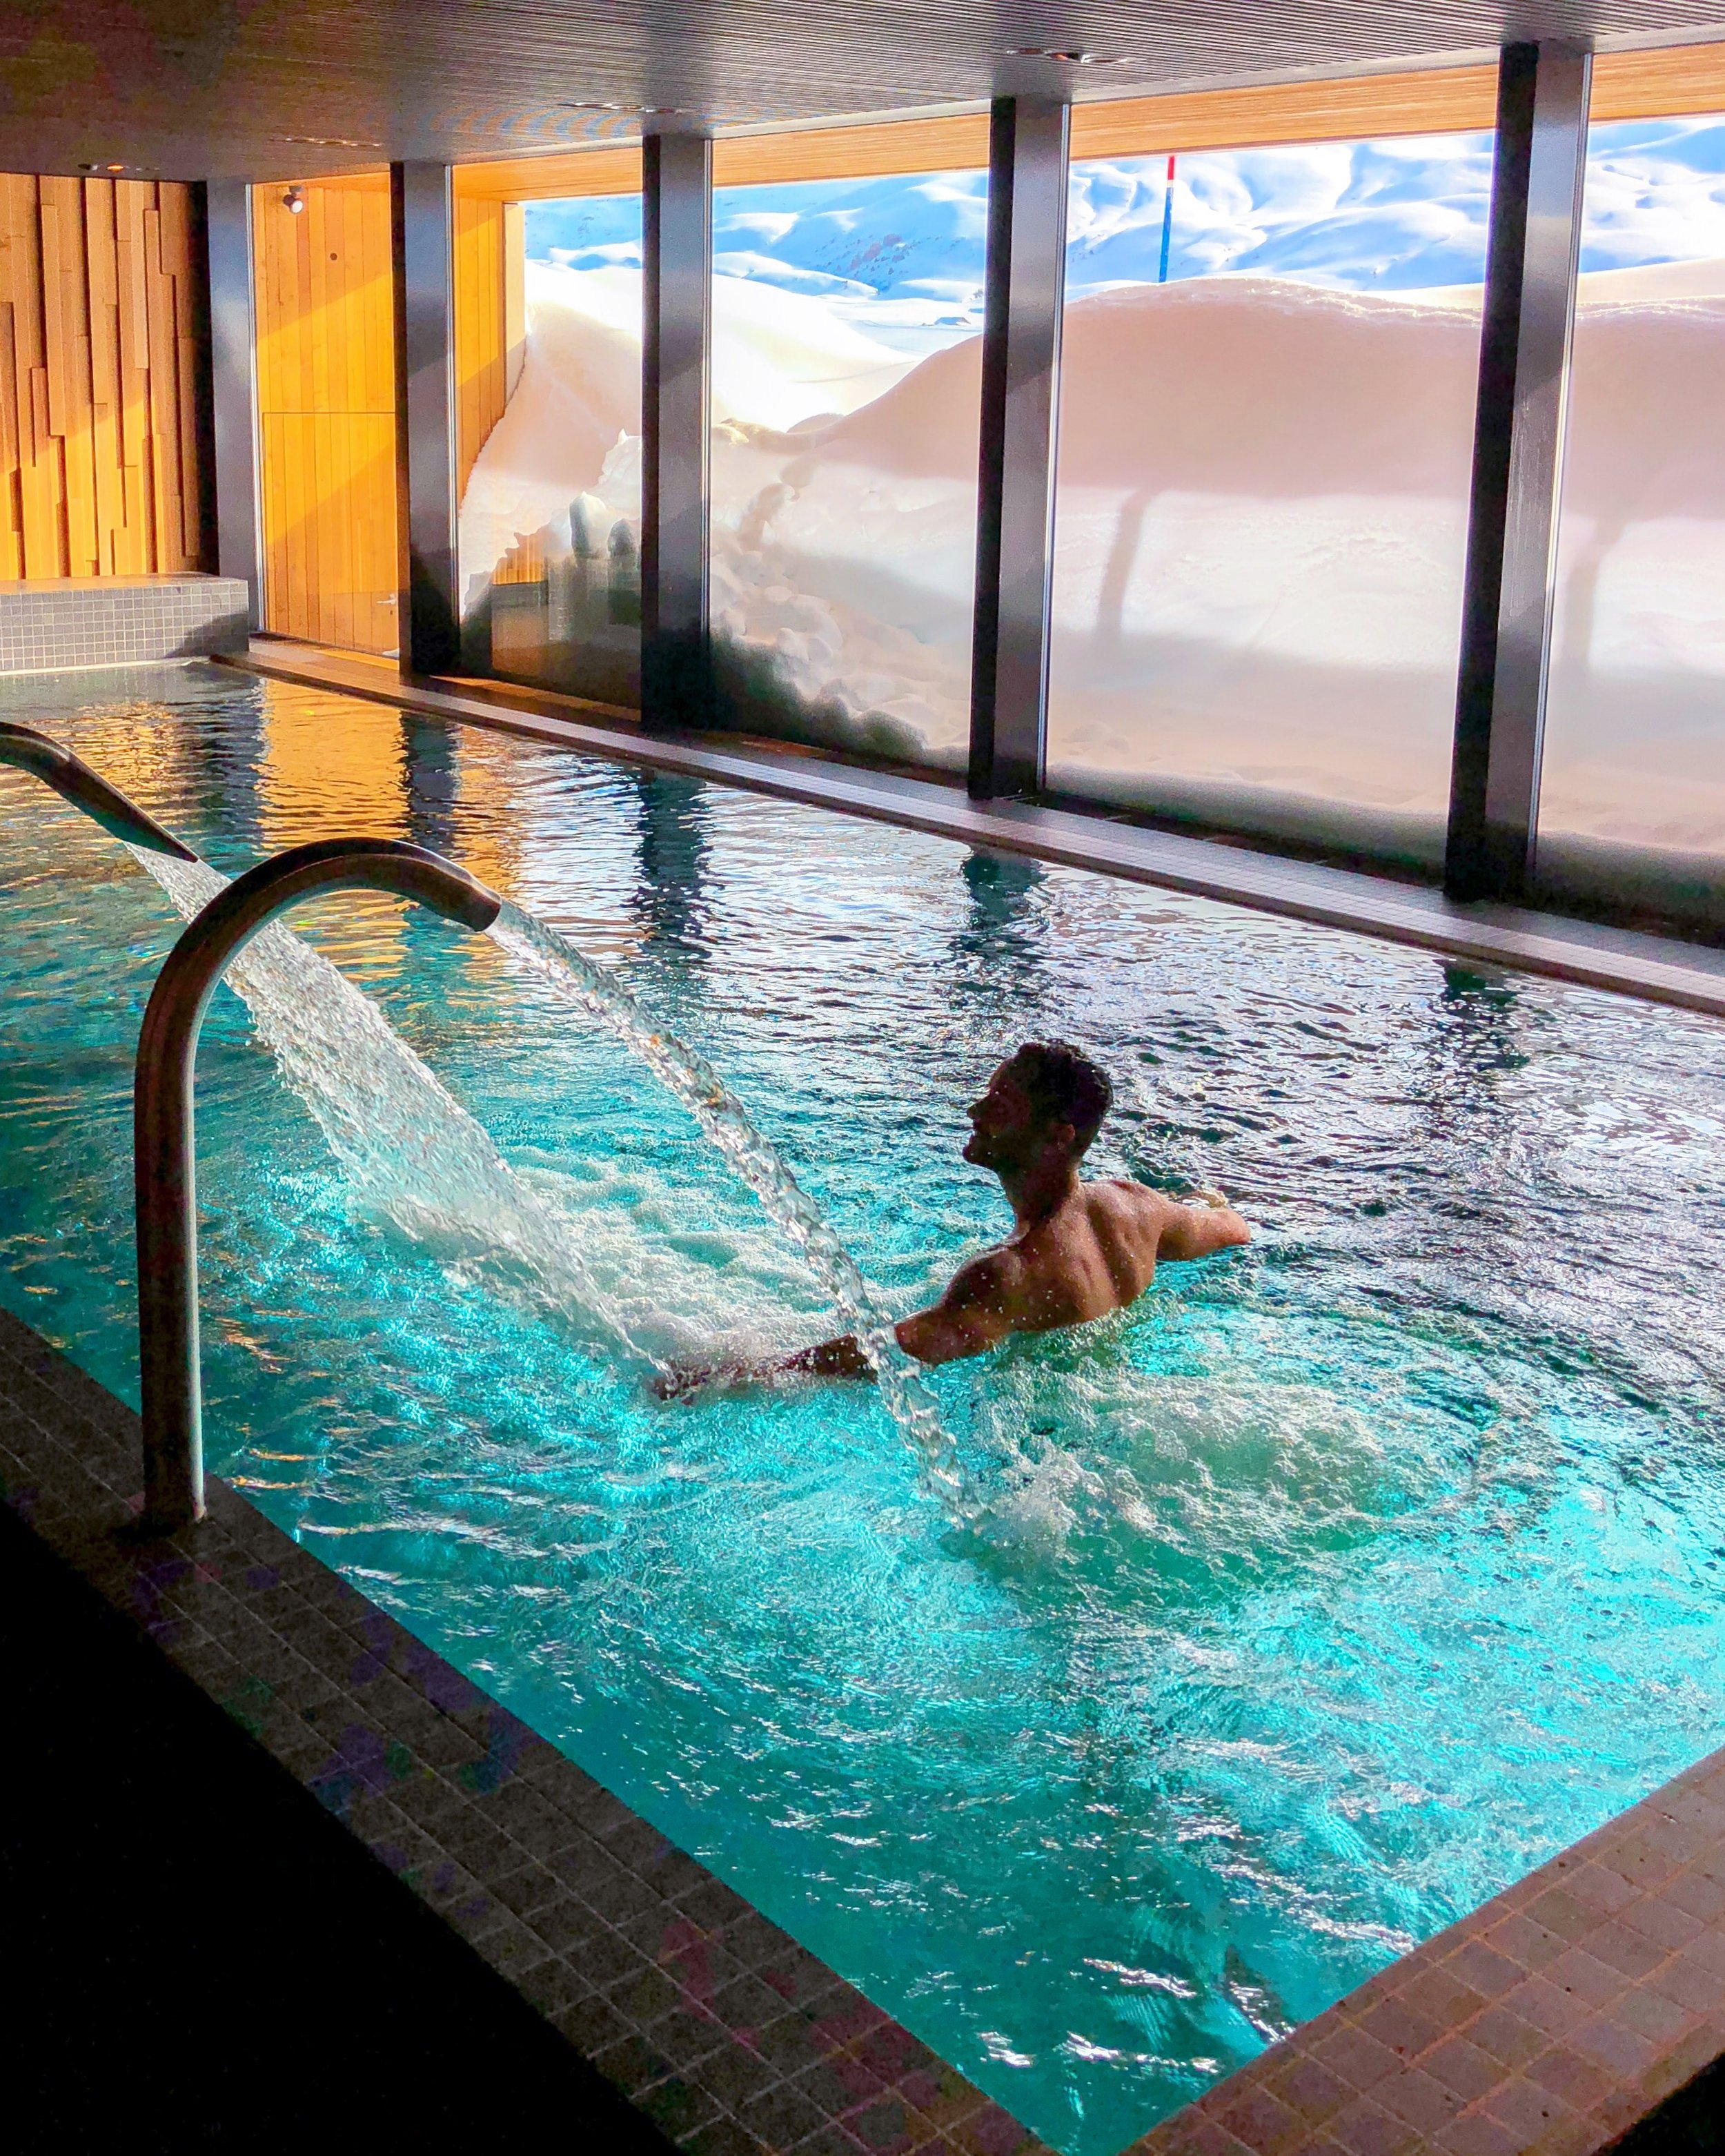  O Spa super moderno tem diversos tipos de saunas e essa piscina incrível com vista para a pista de esqui. 